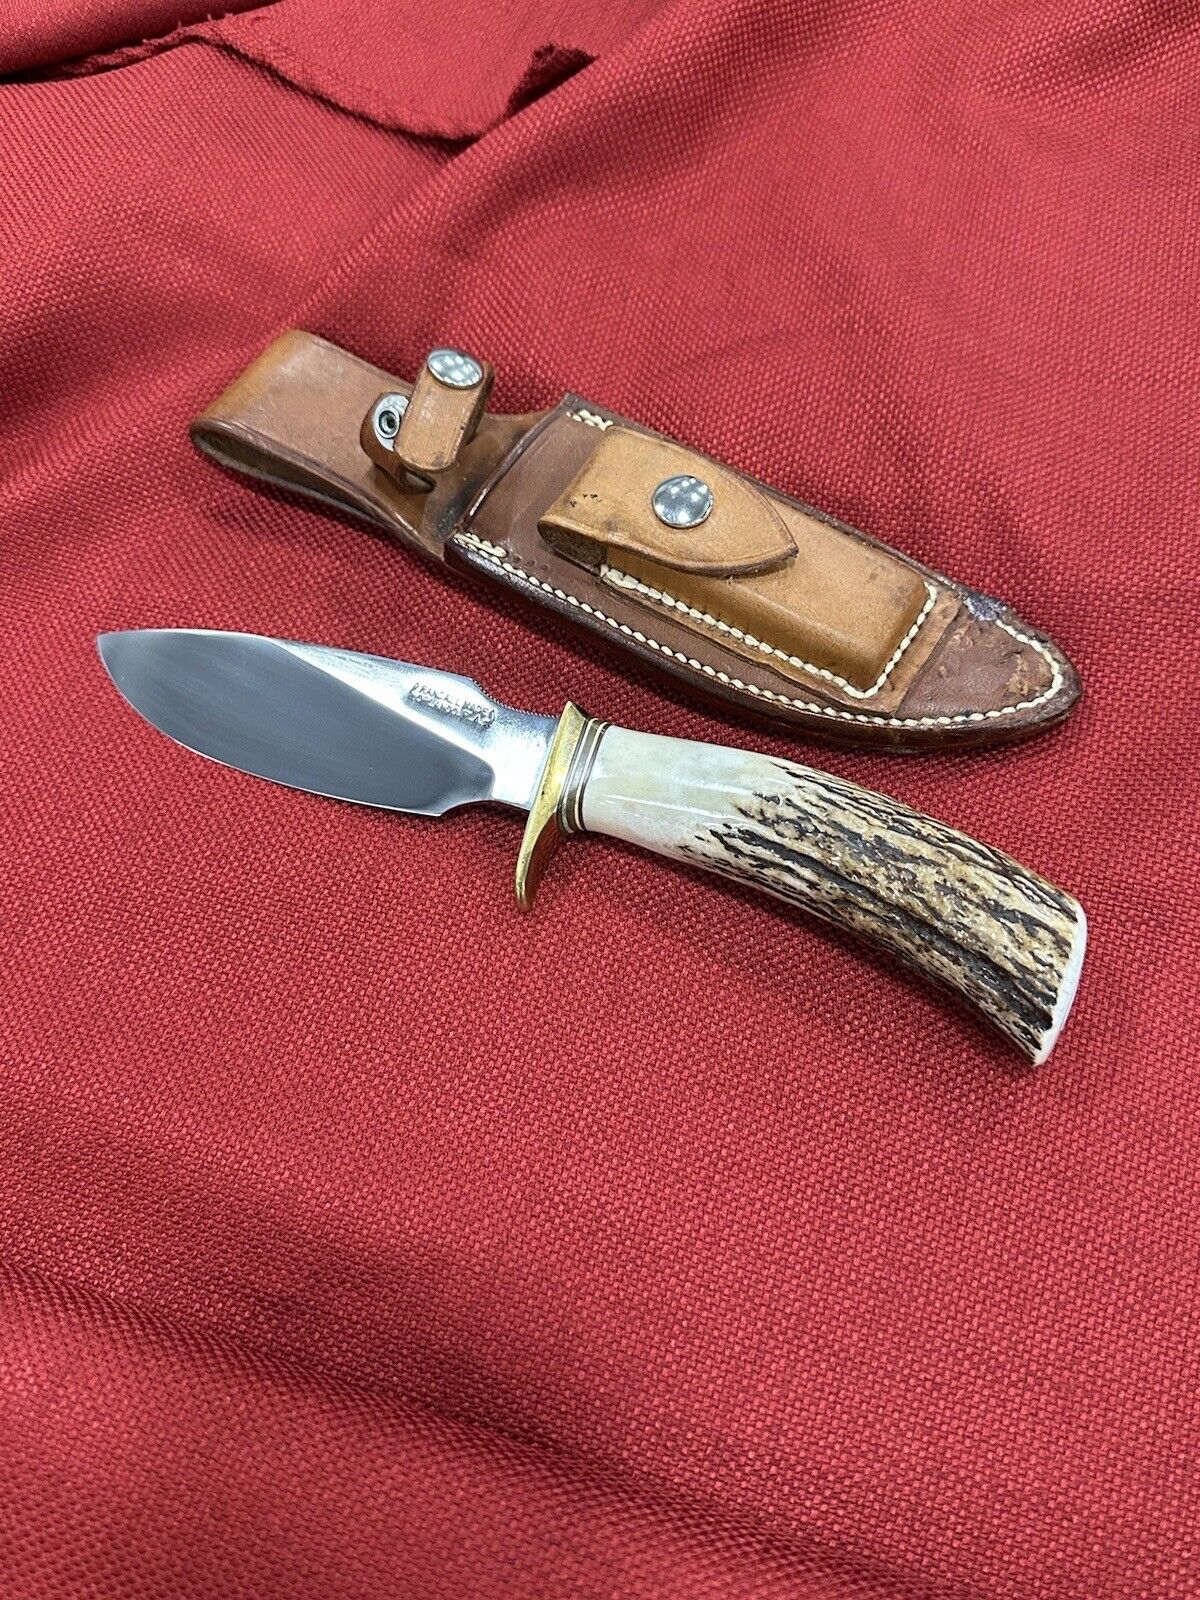 Randall Knife~ Model 11~ Alaskan Skinner